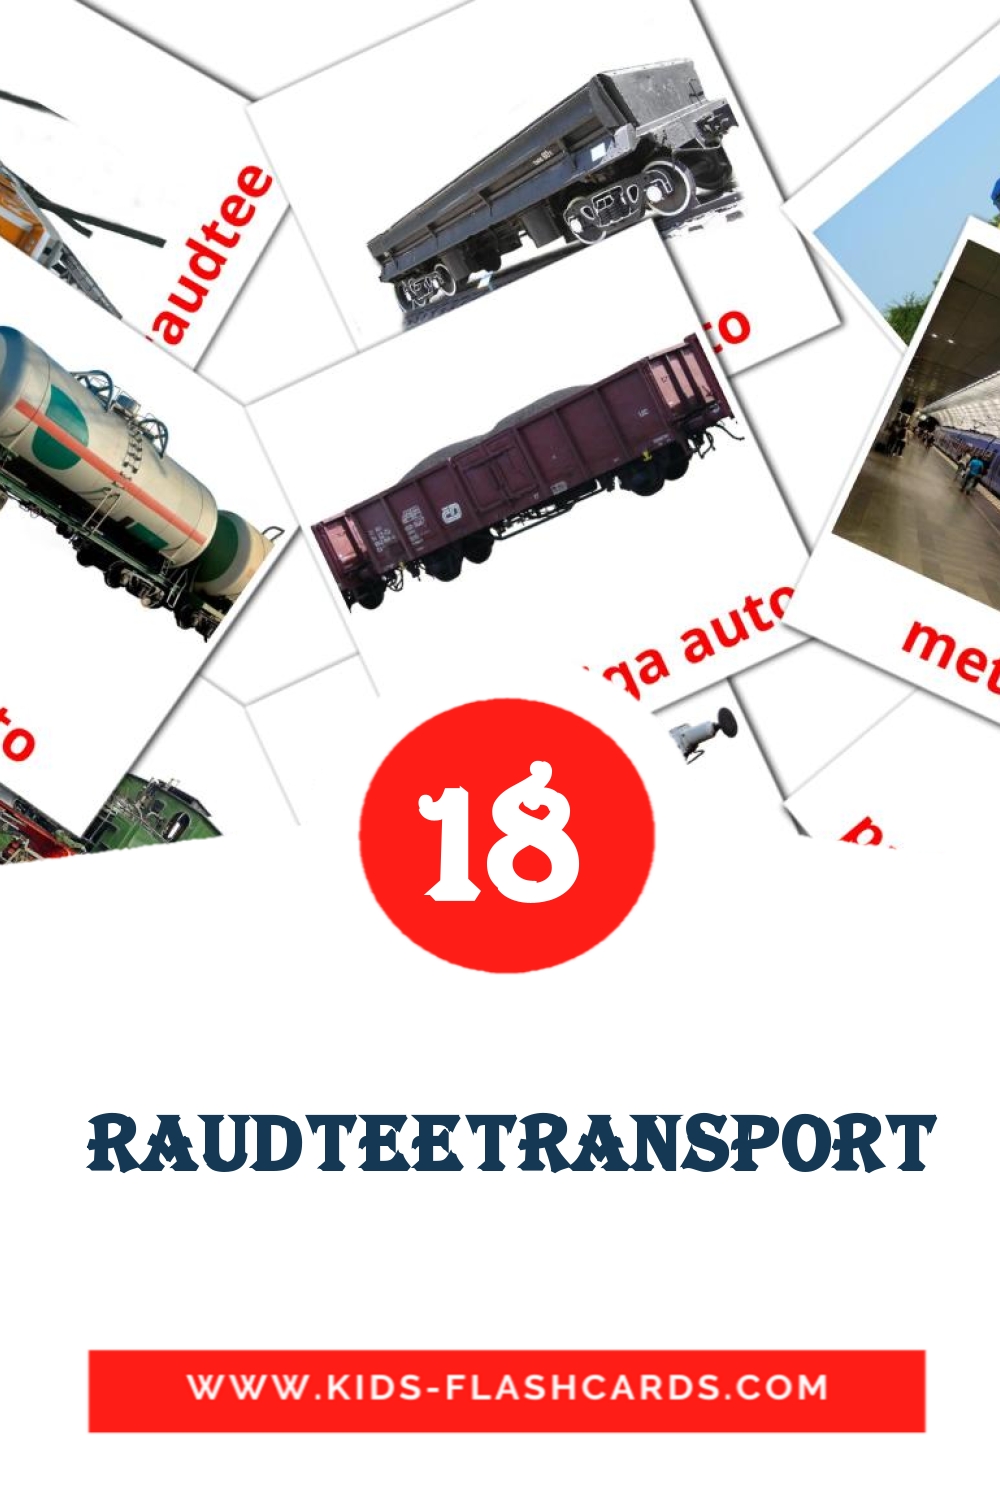 18 cartes illustrées de  raudteetransport pour la maternelle en estonien